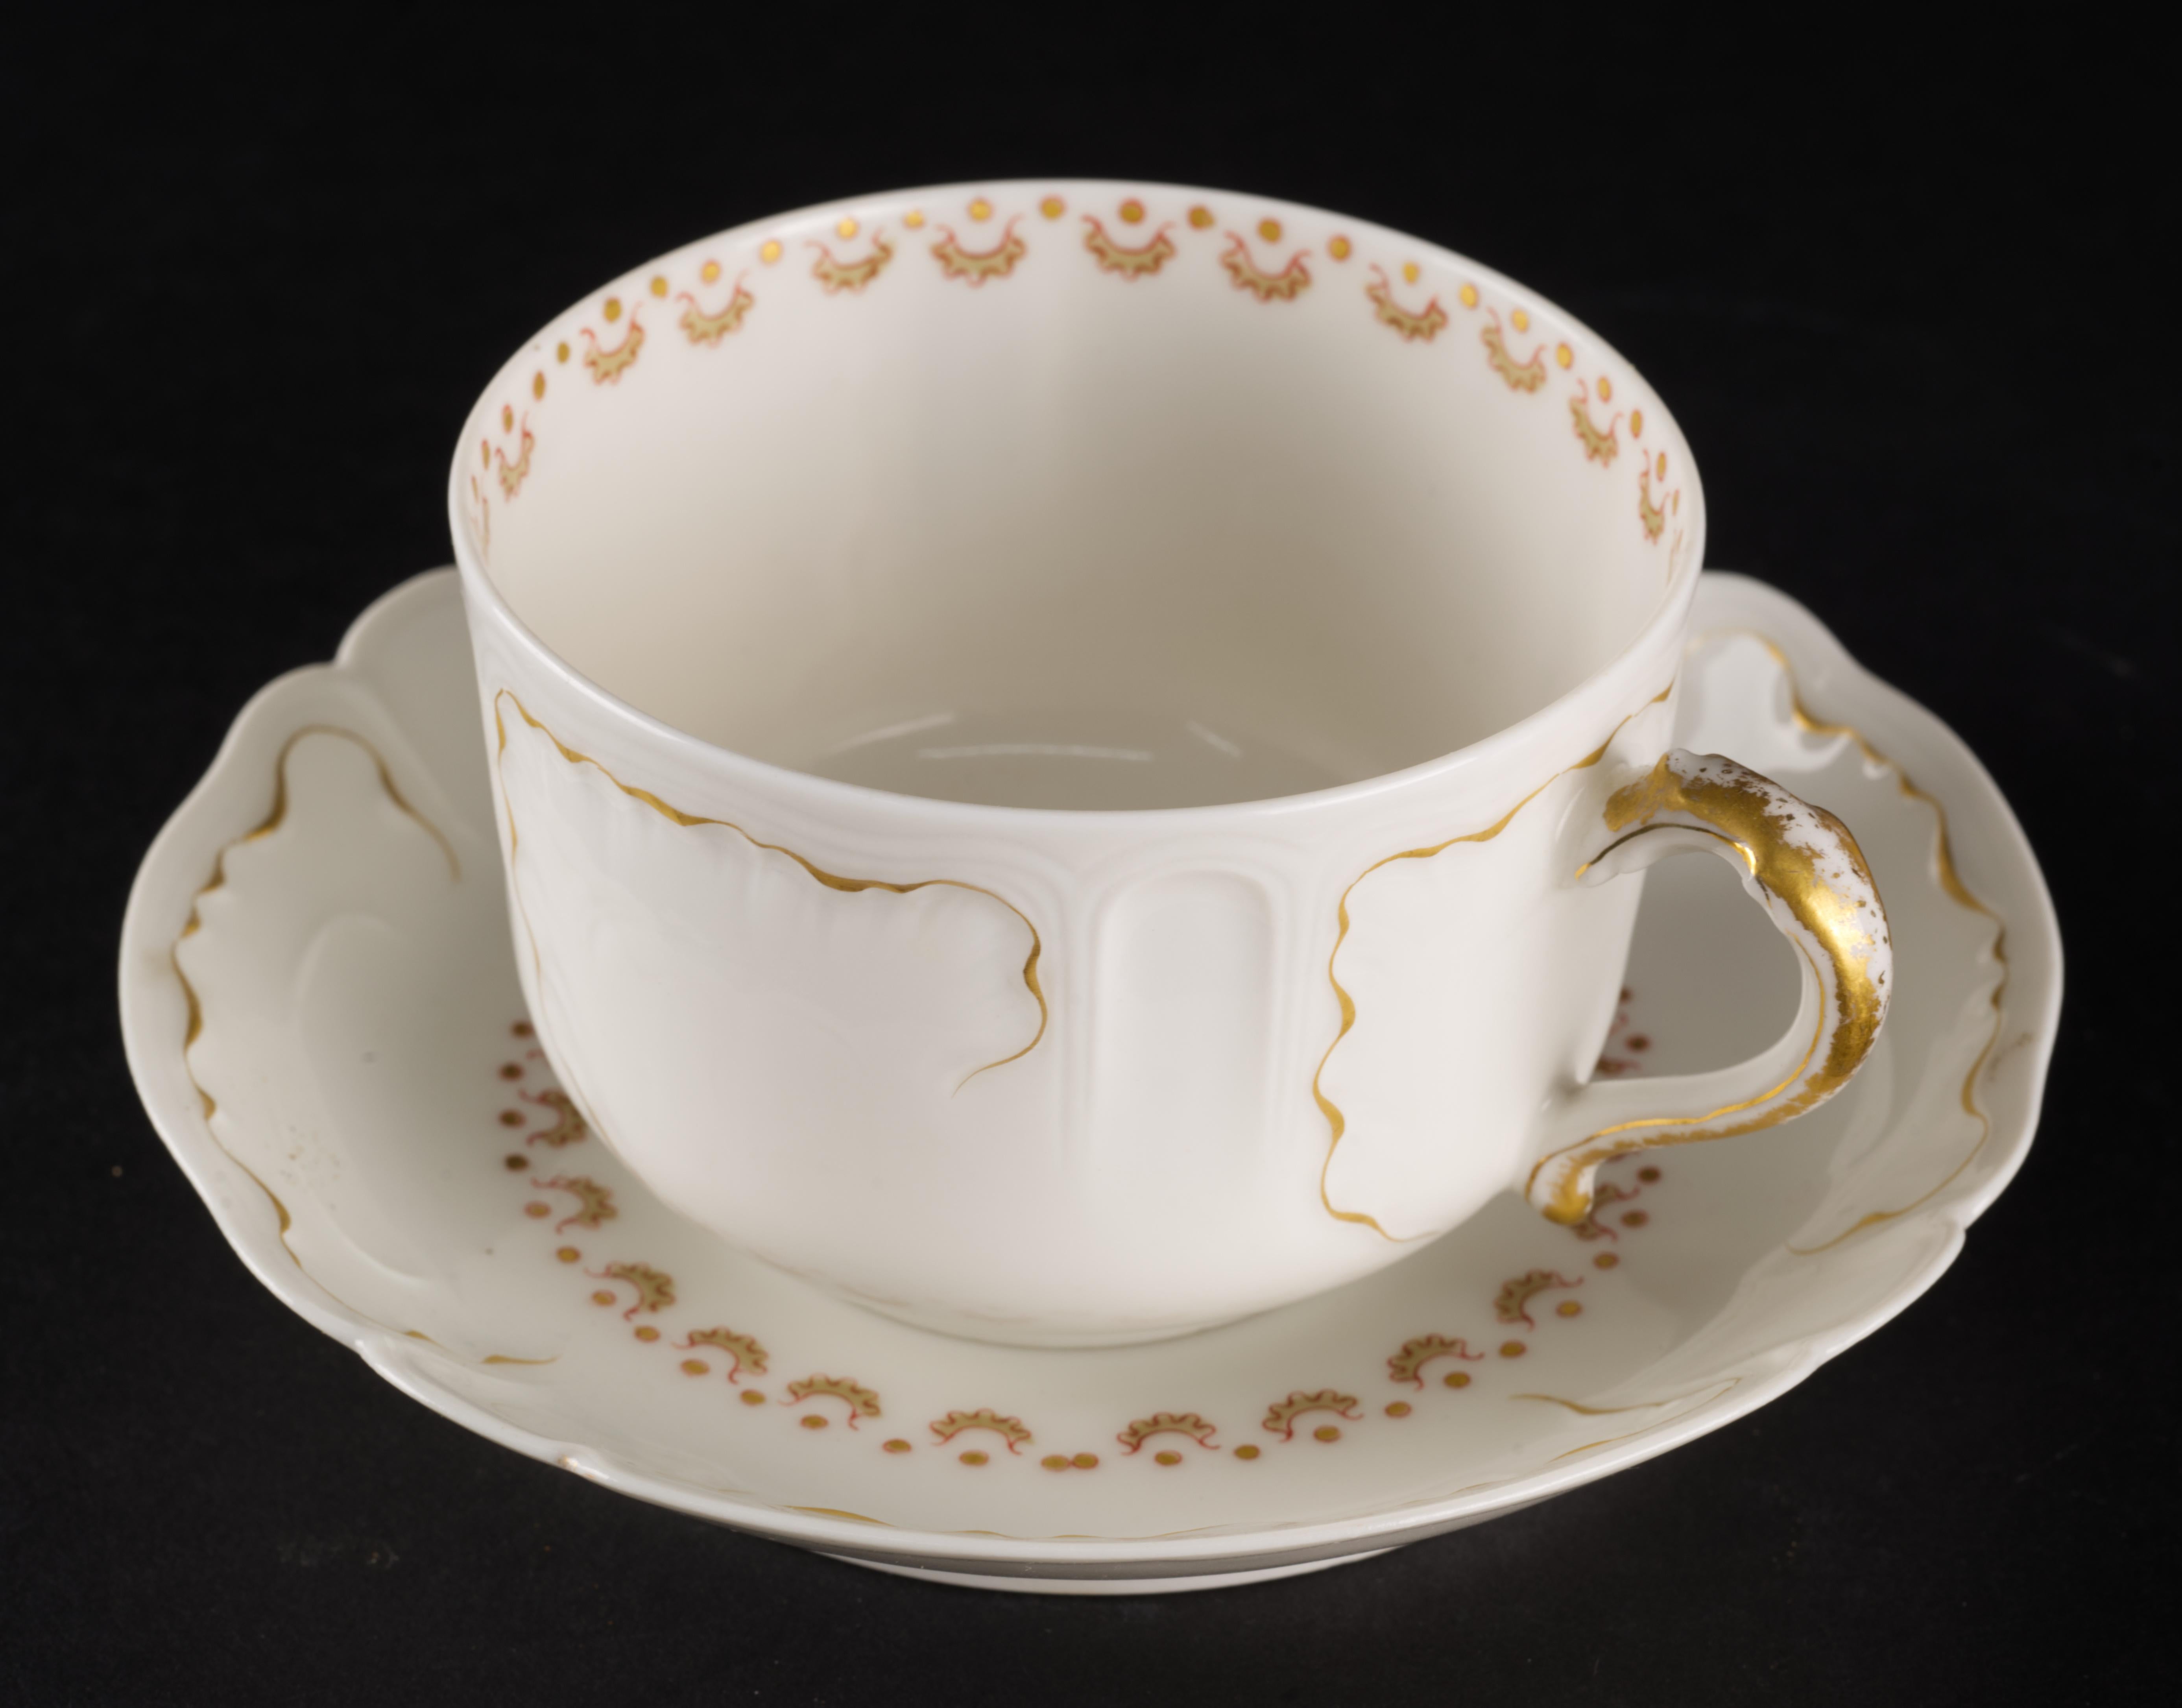 
Le service de tasses et soucoupes de Limoges a été fabriqué en porcelaine fine et semi-translucide et décoré à la main dans une délicate palette d'or, de rouge foncé et de gris pâle. Les contours en or ont été utilisés pour rehausser les formes